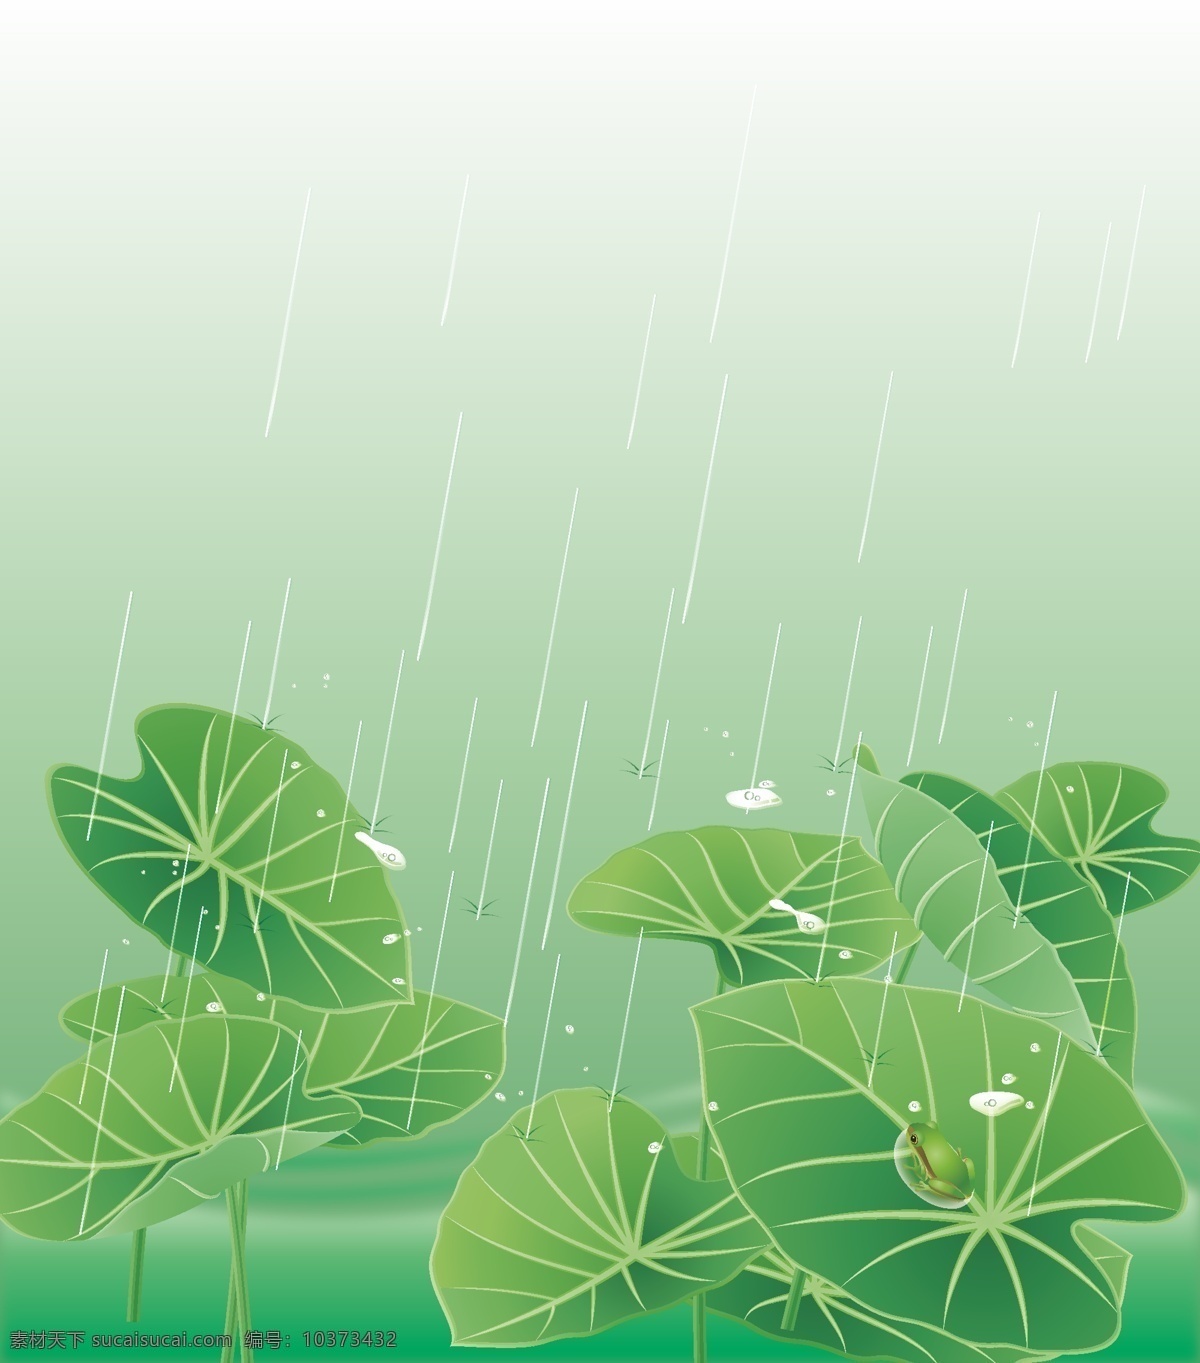 矢量 手绘 卡通 夏日 荷塘 背景 海报 荷叶 绿色 青蛙 清新 童趣 雨滴